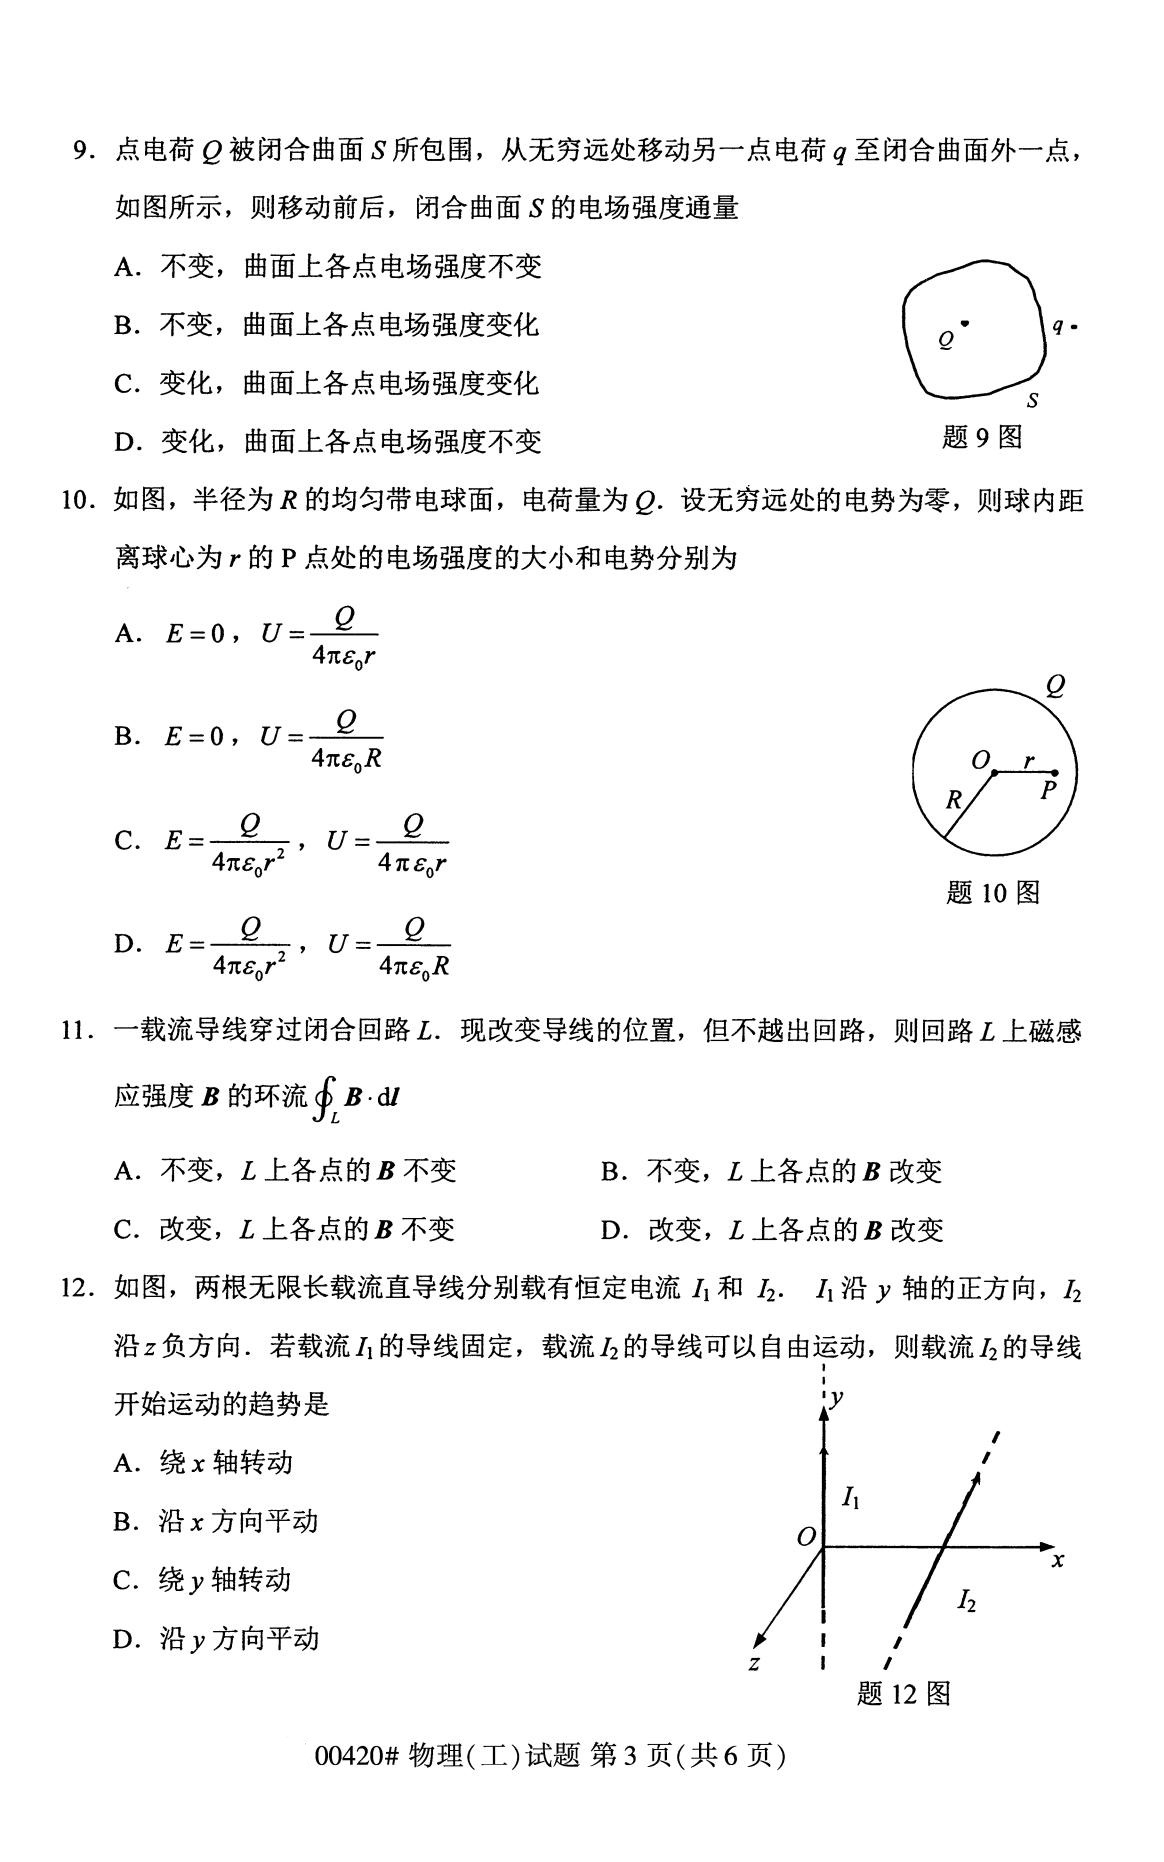 福建省2020年8月自学考试本科物理(工)真题(图3)